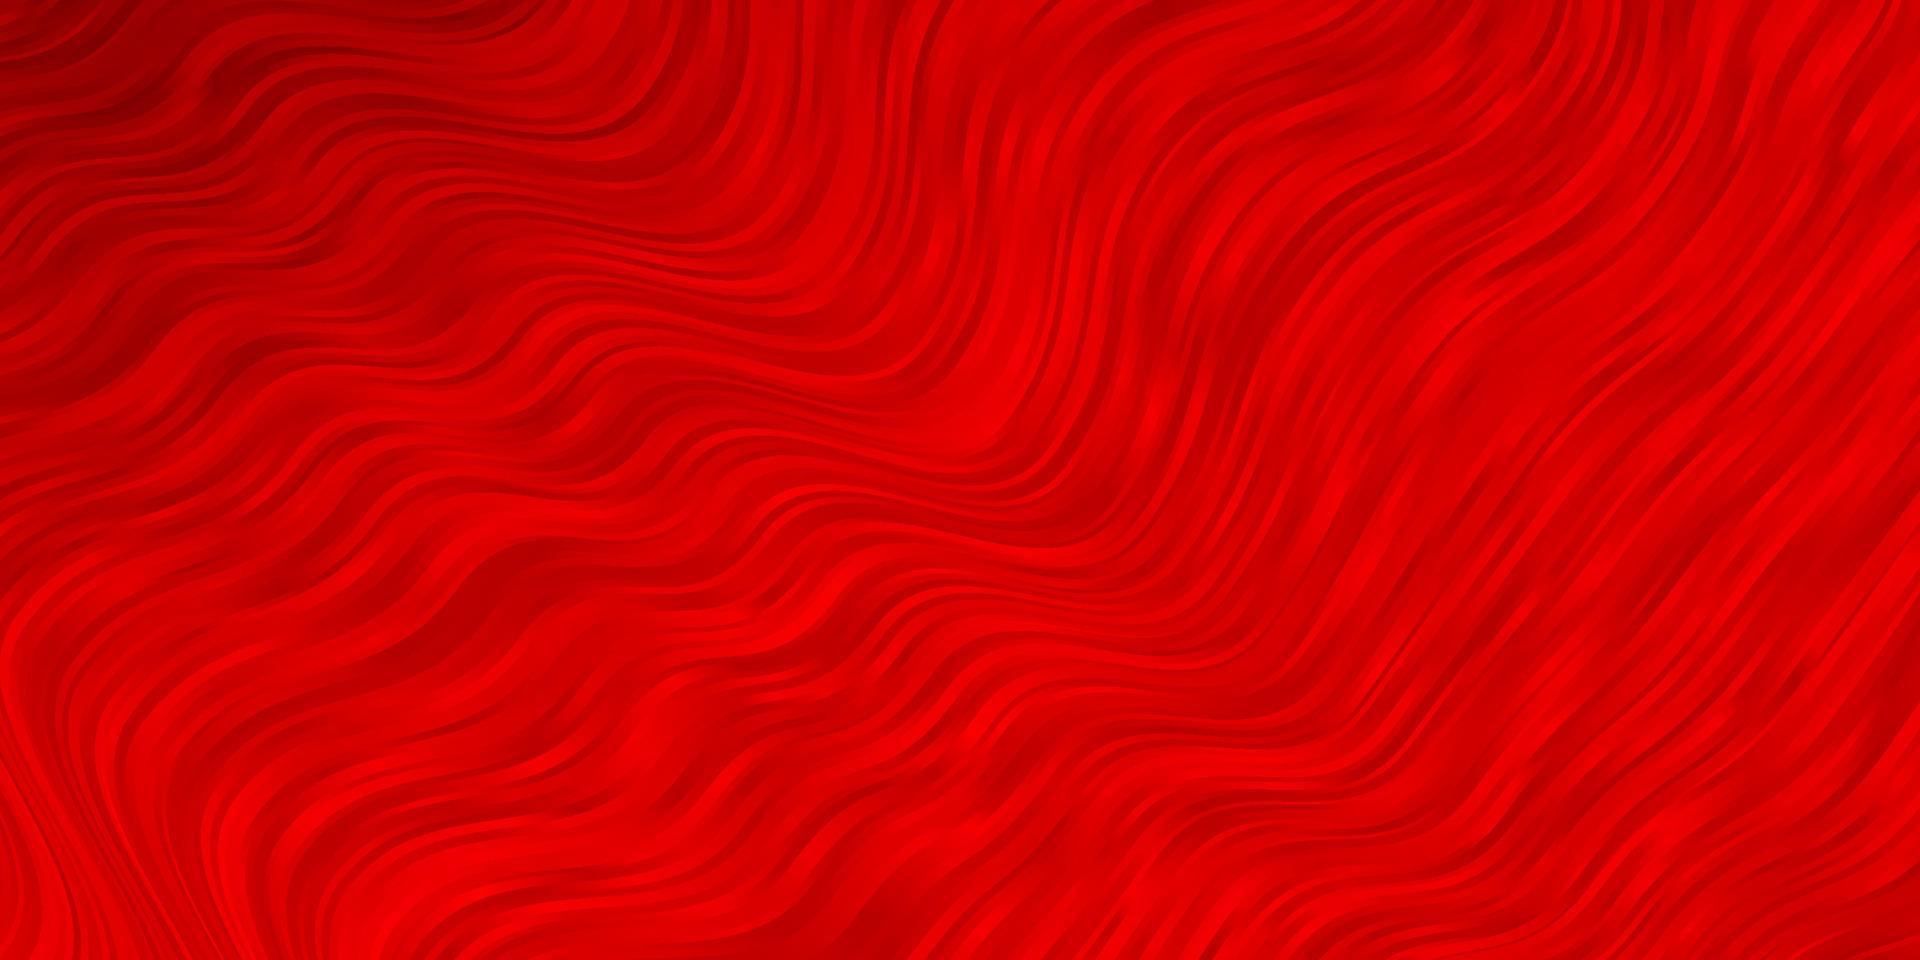 sfondo vettoriale rosso chiaro con curve.